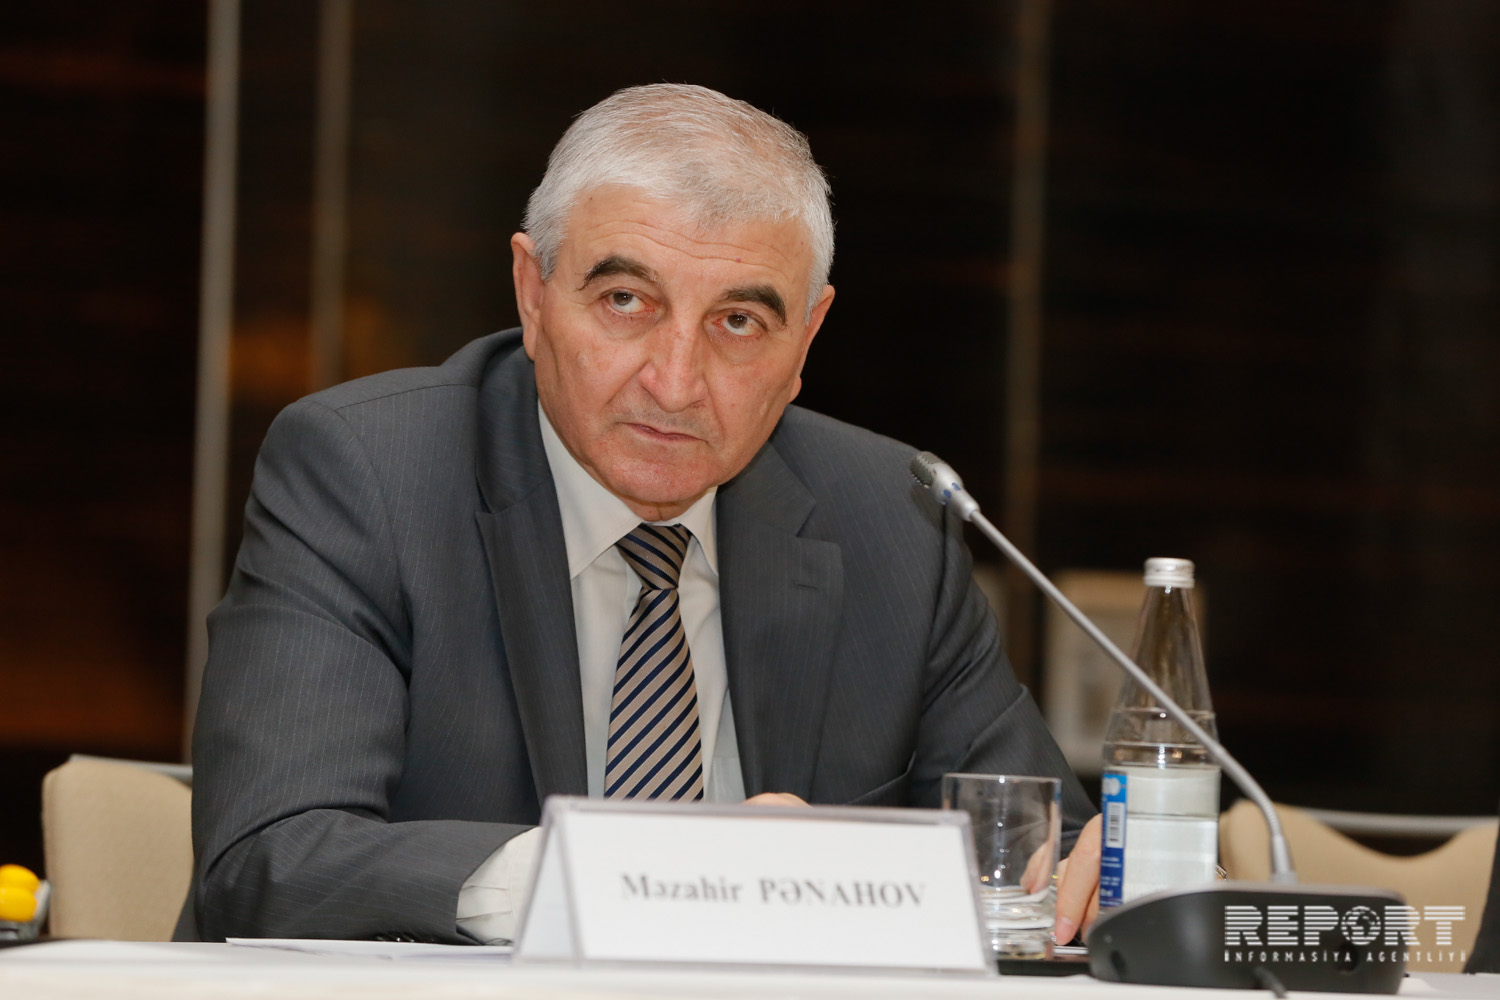 Мазахир Панахов: Календарный план внеочередных парламентских выборов готов и будет утвержден сегодня